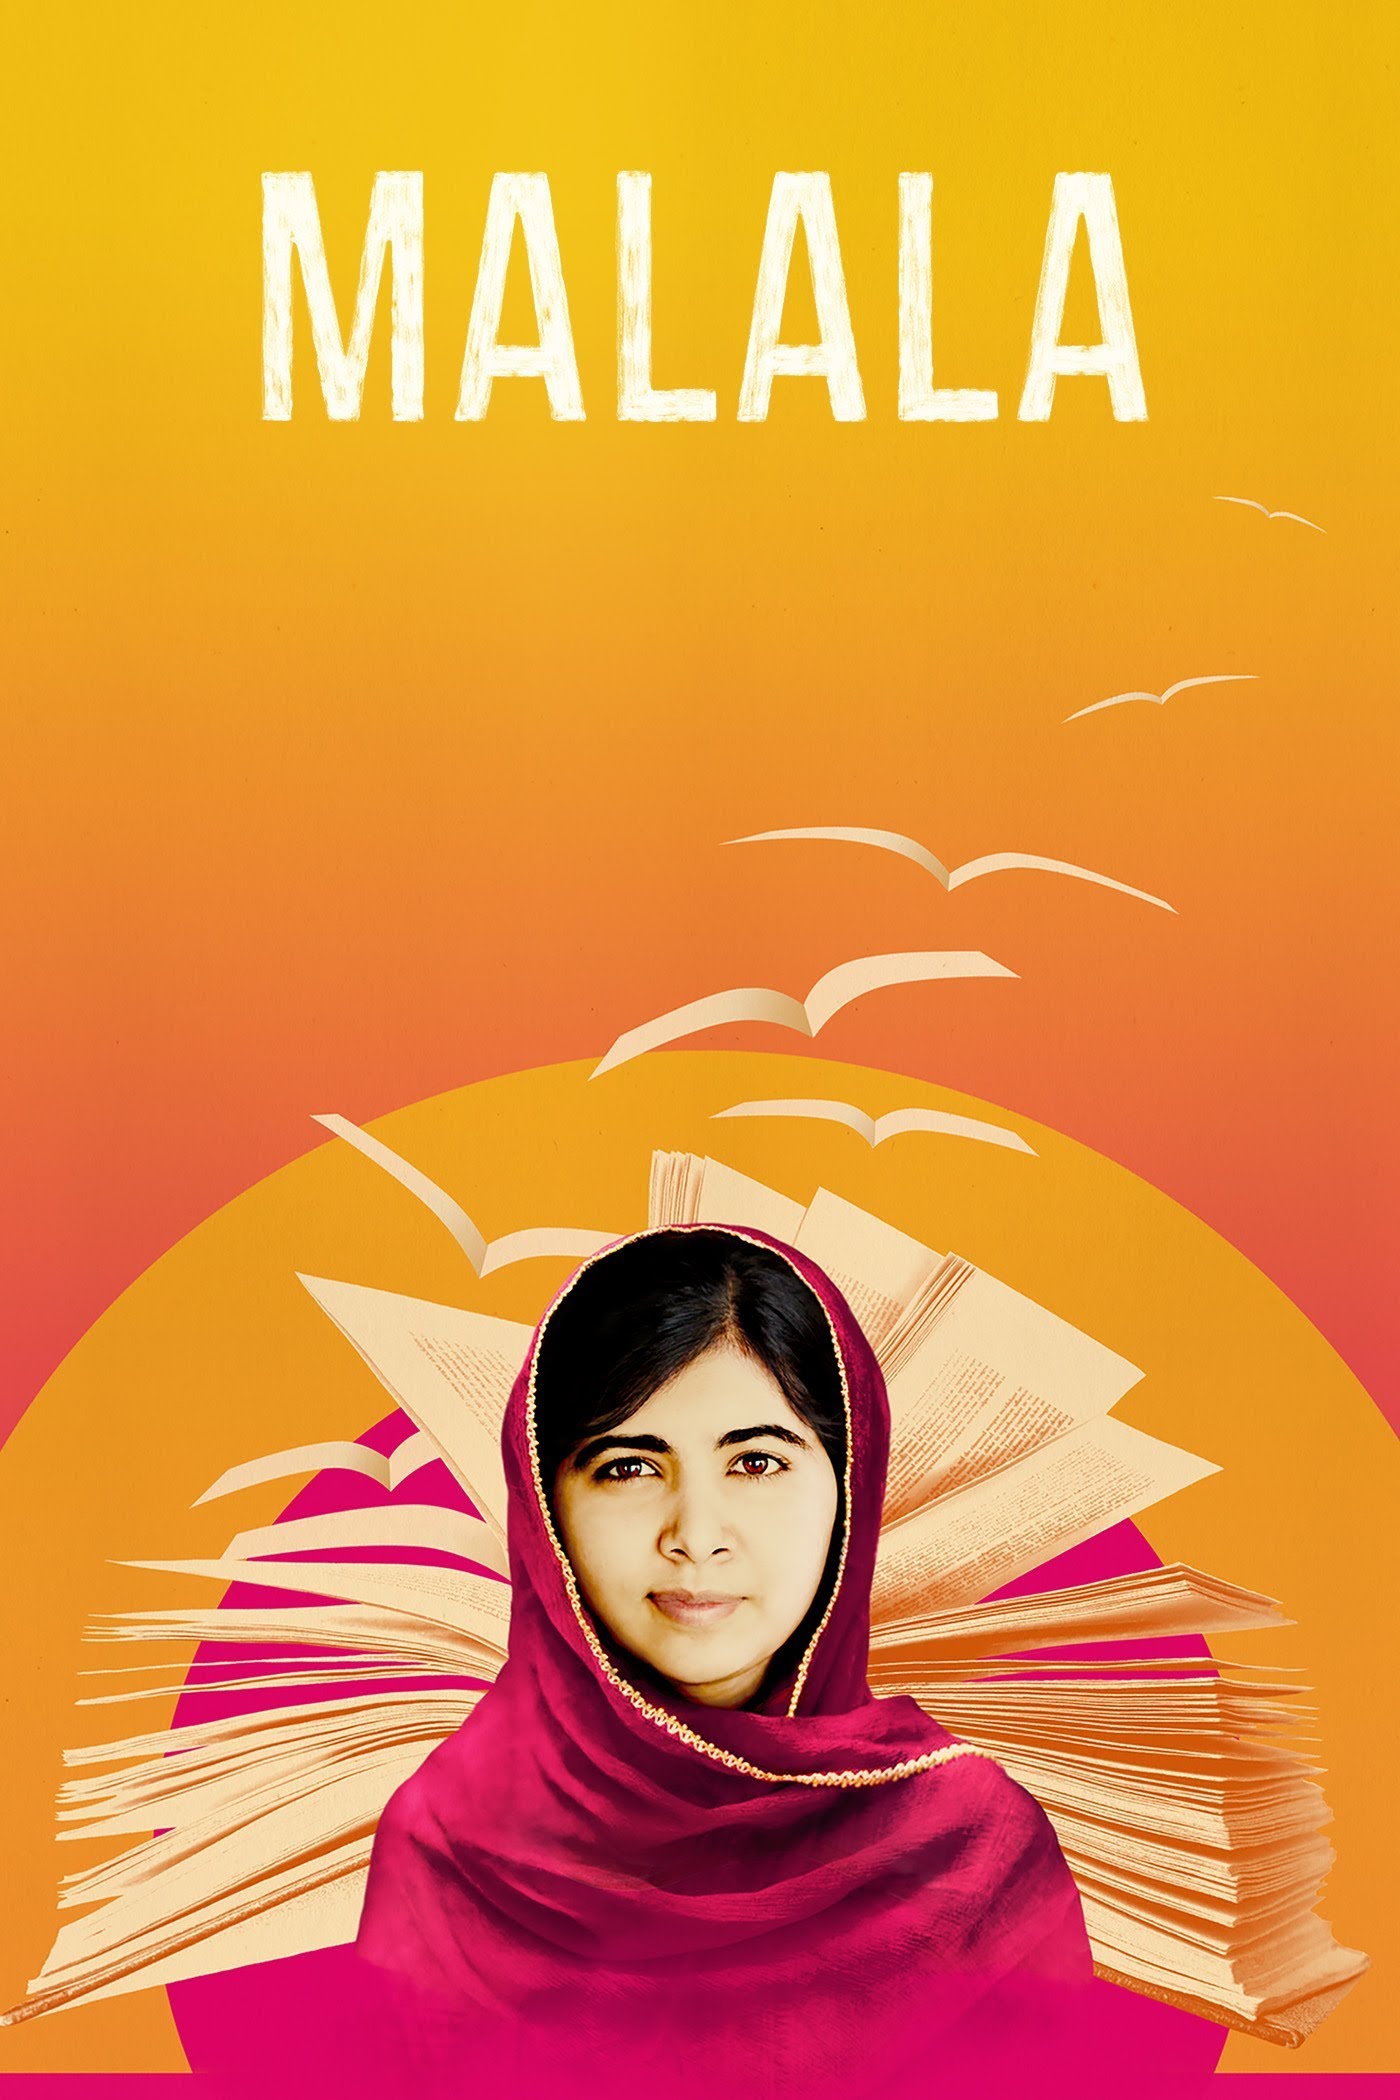 Malala (2015)